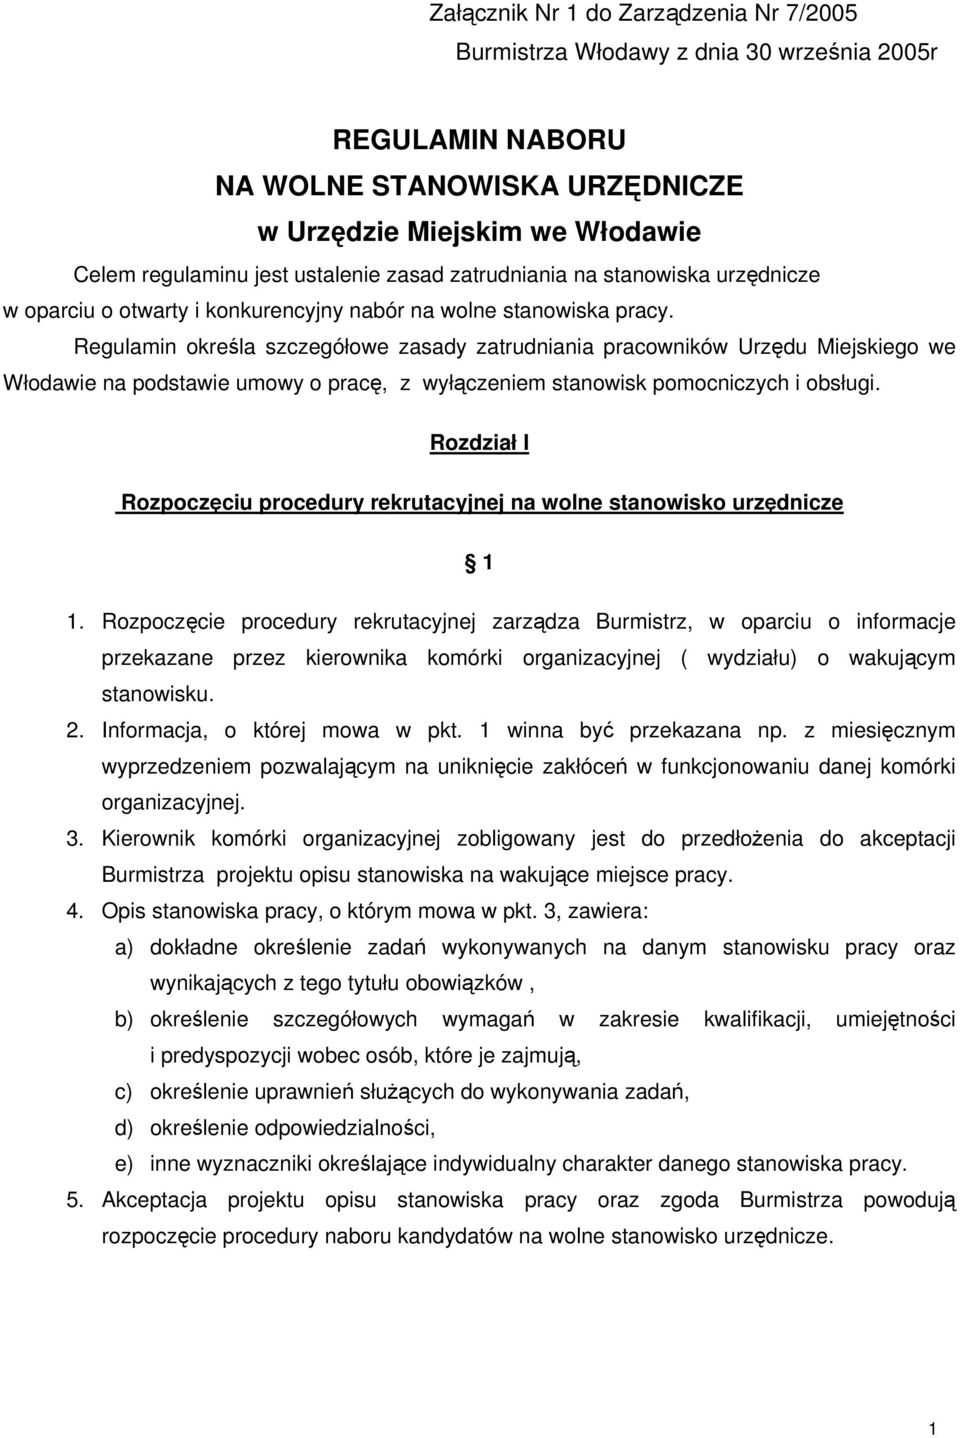 Regulamin określa szczegółowe zasady zatrudniania pracowników Urzędu Miejskiego we Włodawie na podstawie umowy o pracę, z wyłączeniem stanowisk pomocniczych i obsługi.